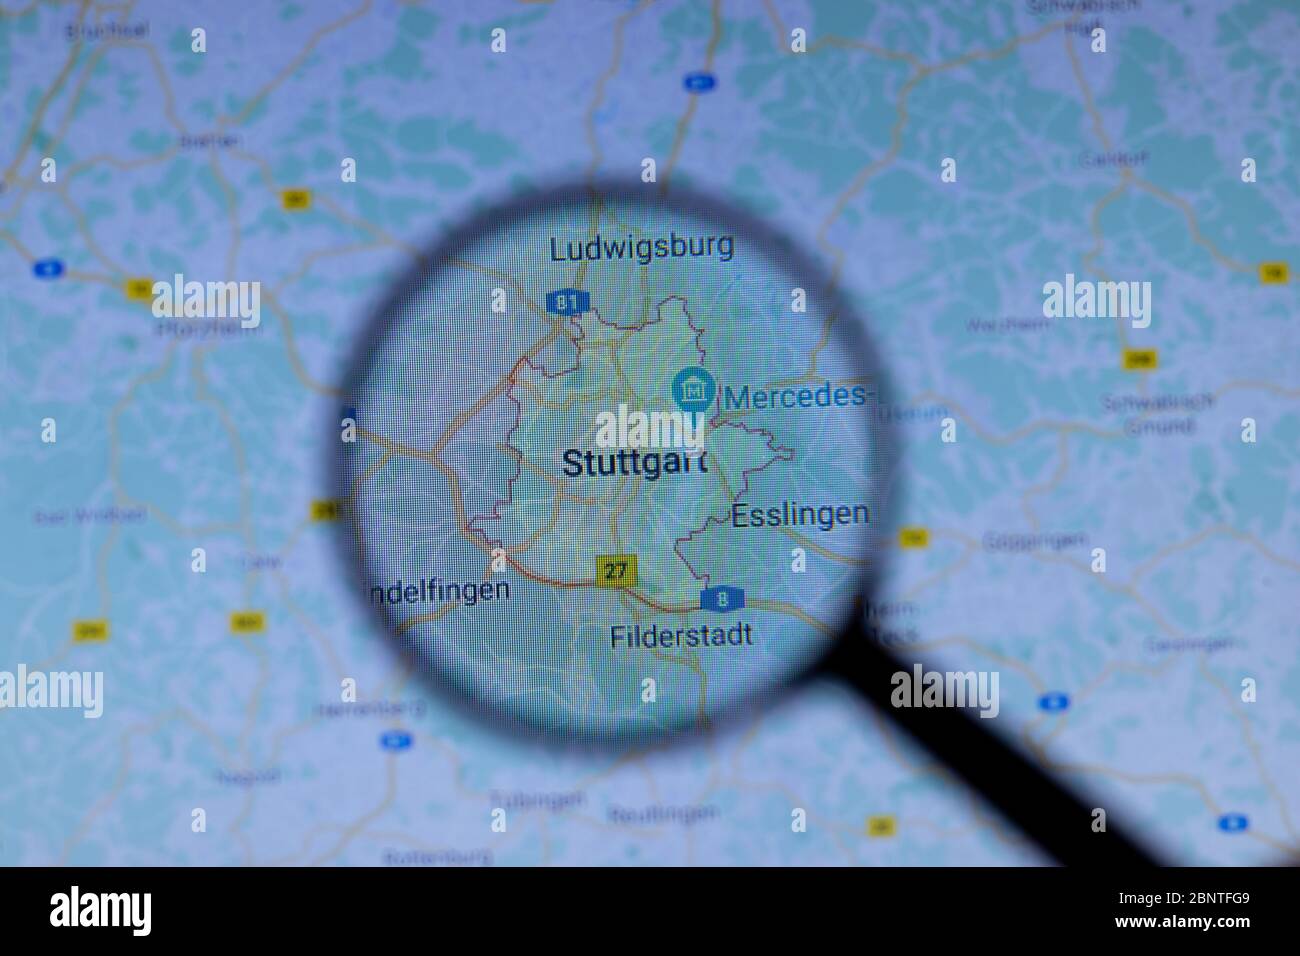 Los Angeles, California, EE.UU. - 1 de mayo de 2020: Ciudad de Stuttgart Nombre de la ciudad con ubicación en el mapa de cerca, editorial ilustrativa Foto de stock